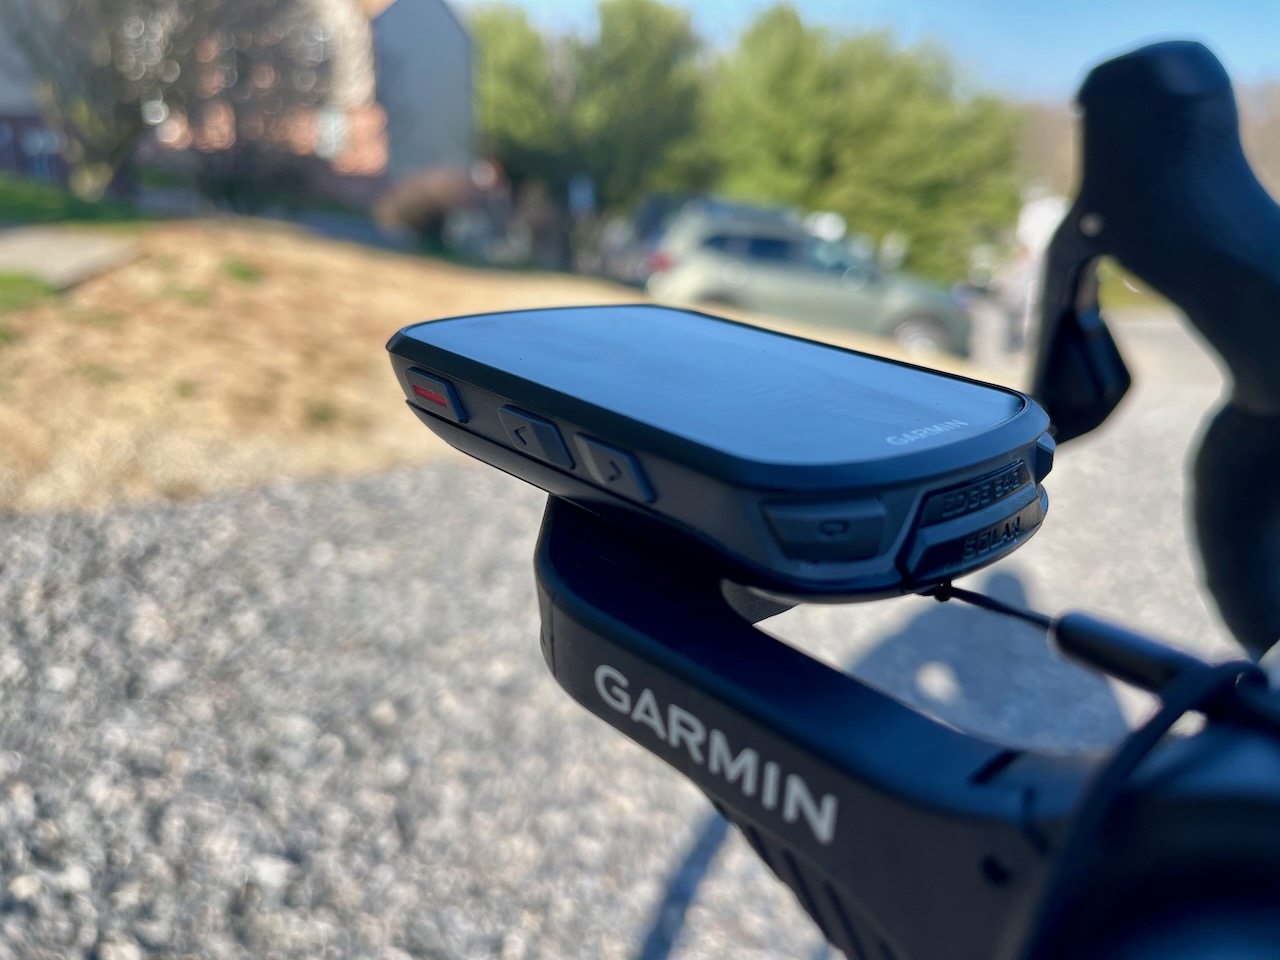 GARMIN EDGE 840 GPS bicicleta